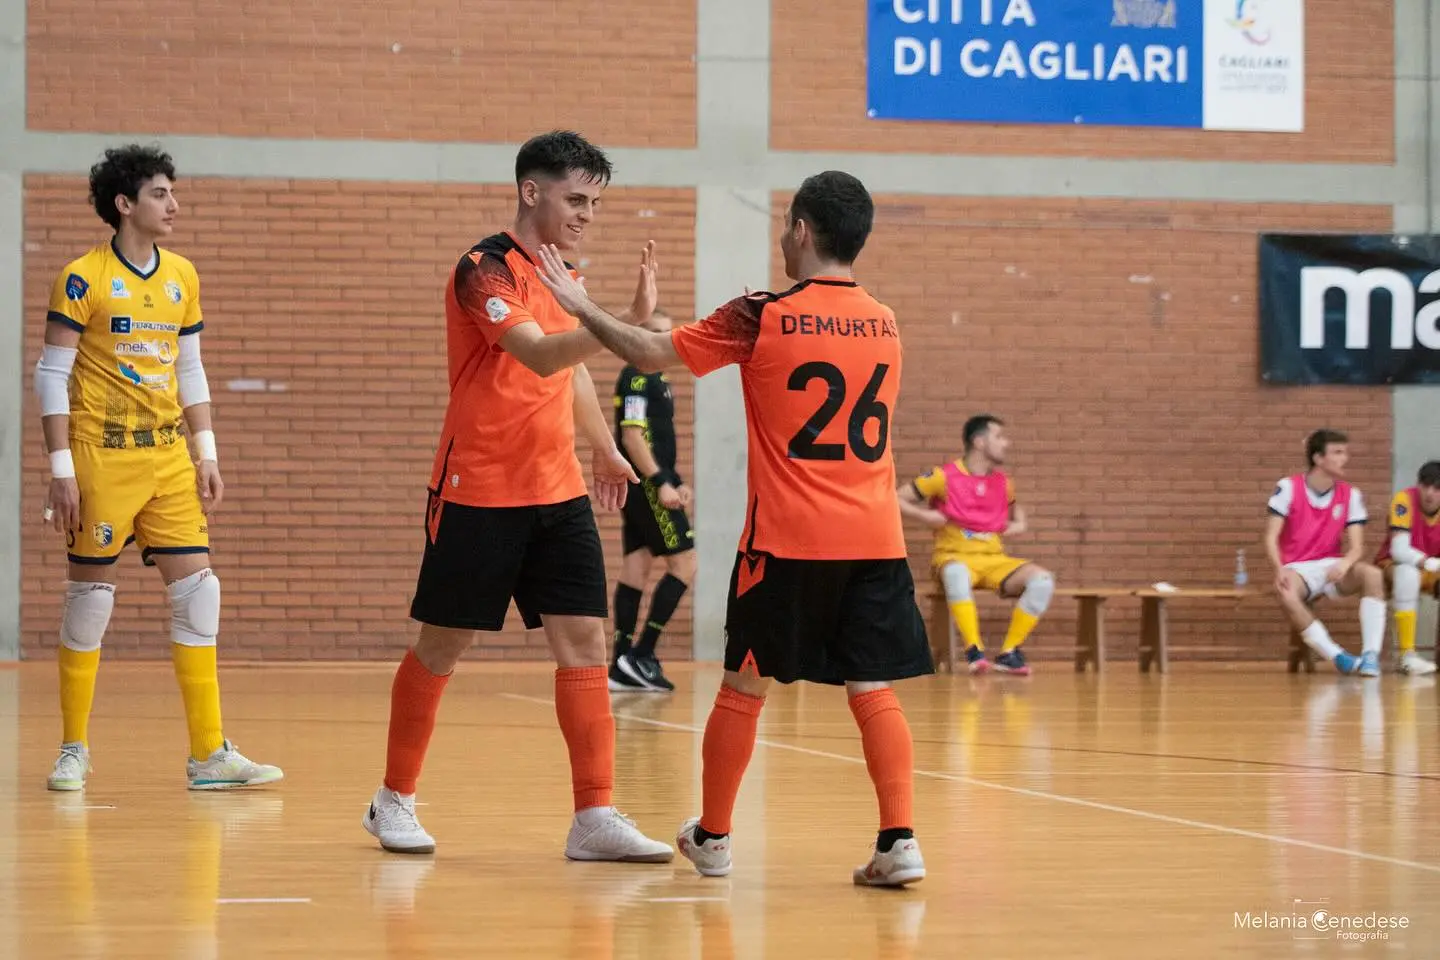 Riccardo Siddi e Diego Demurtas della Leonardo, entrambi in gol nell'andata contro la CDM Futsal (foto di Melania Cenedese)